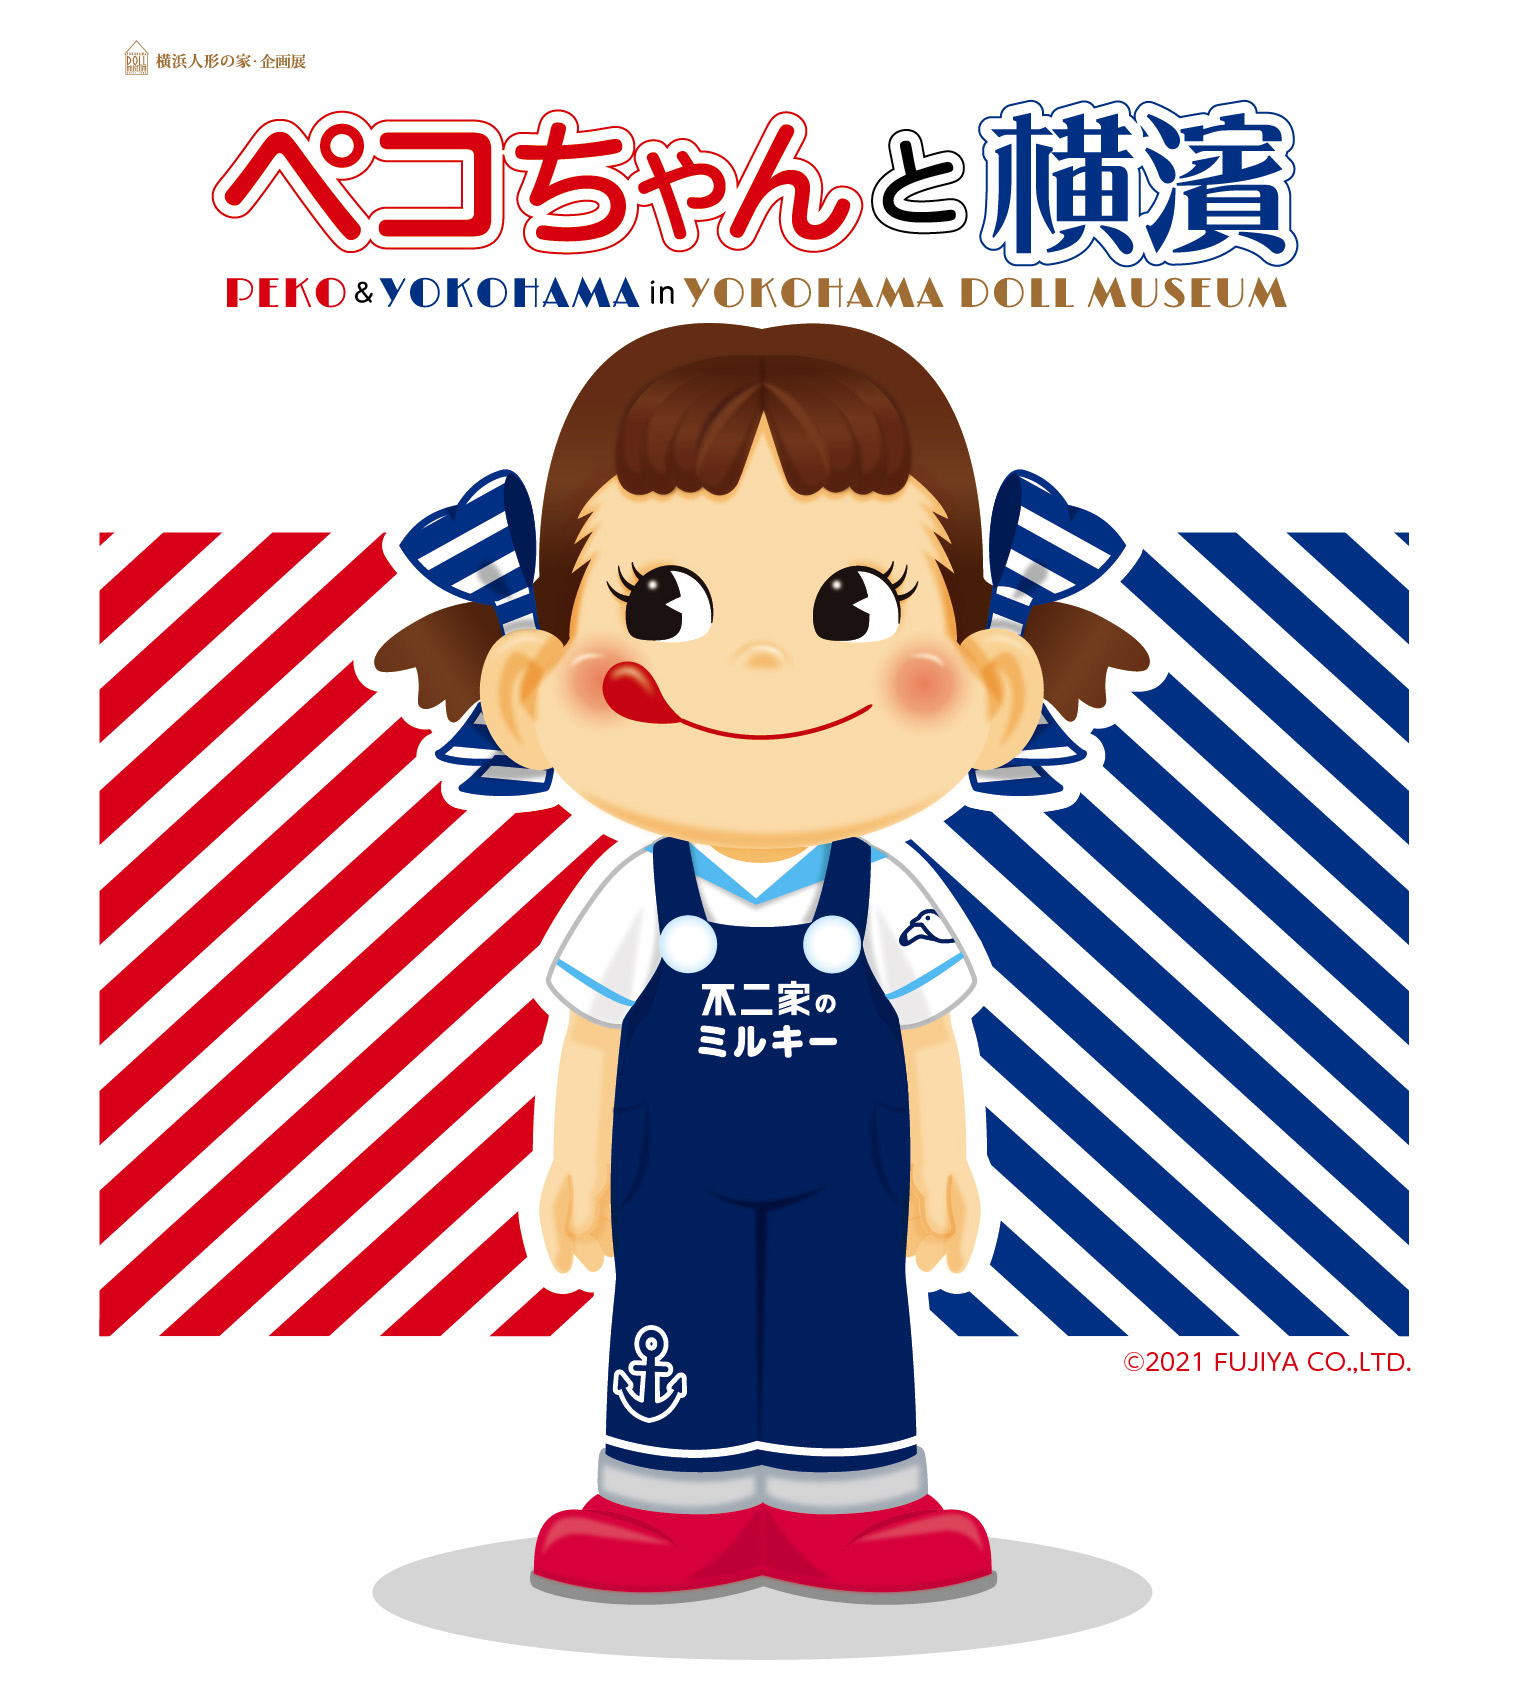 横浜人形の家でペコちゃんの魅力がつまった企画展を開催 横浜人形の家のプレスリリース